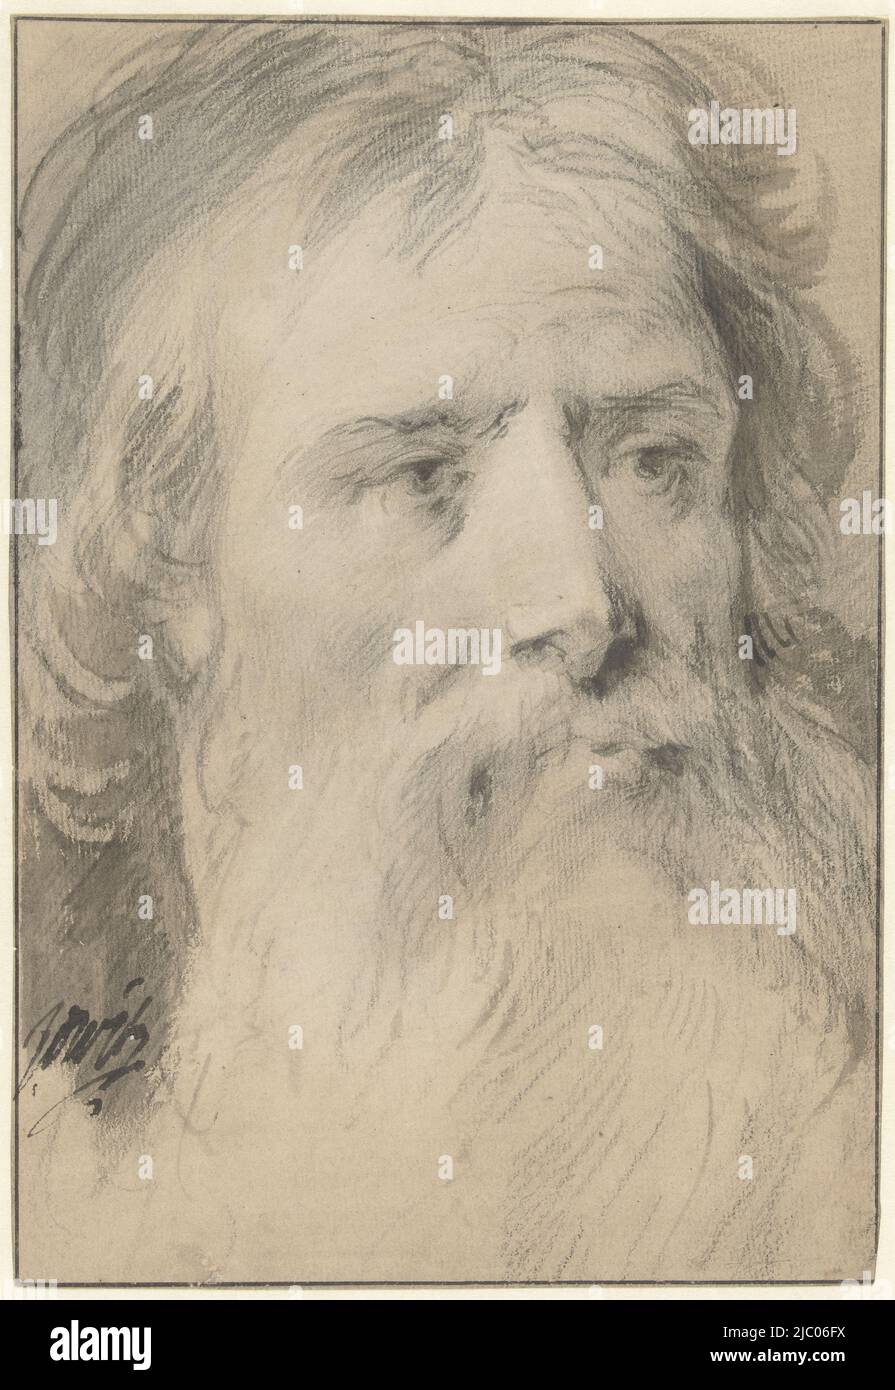 Testa uomo con barba grande, disegnatore: Jacob de wit, 1705 - 1754, carta, pennello, h 278 cm x l 190 cm Foto Stock